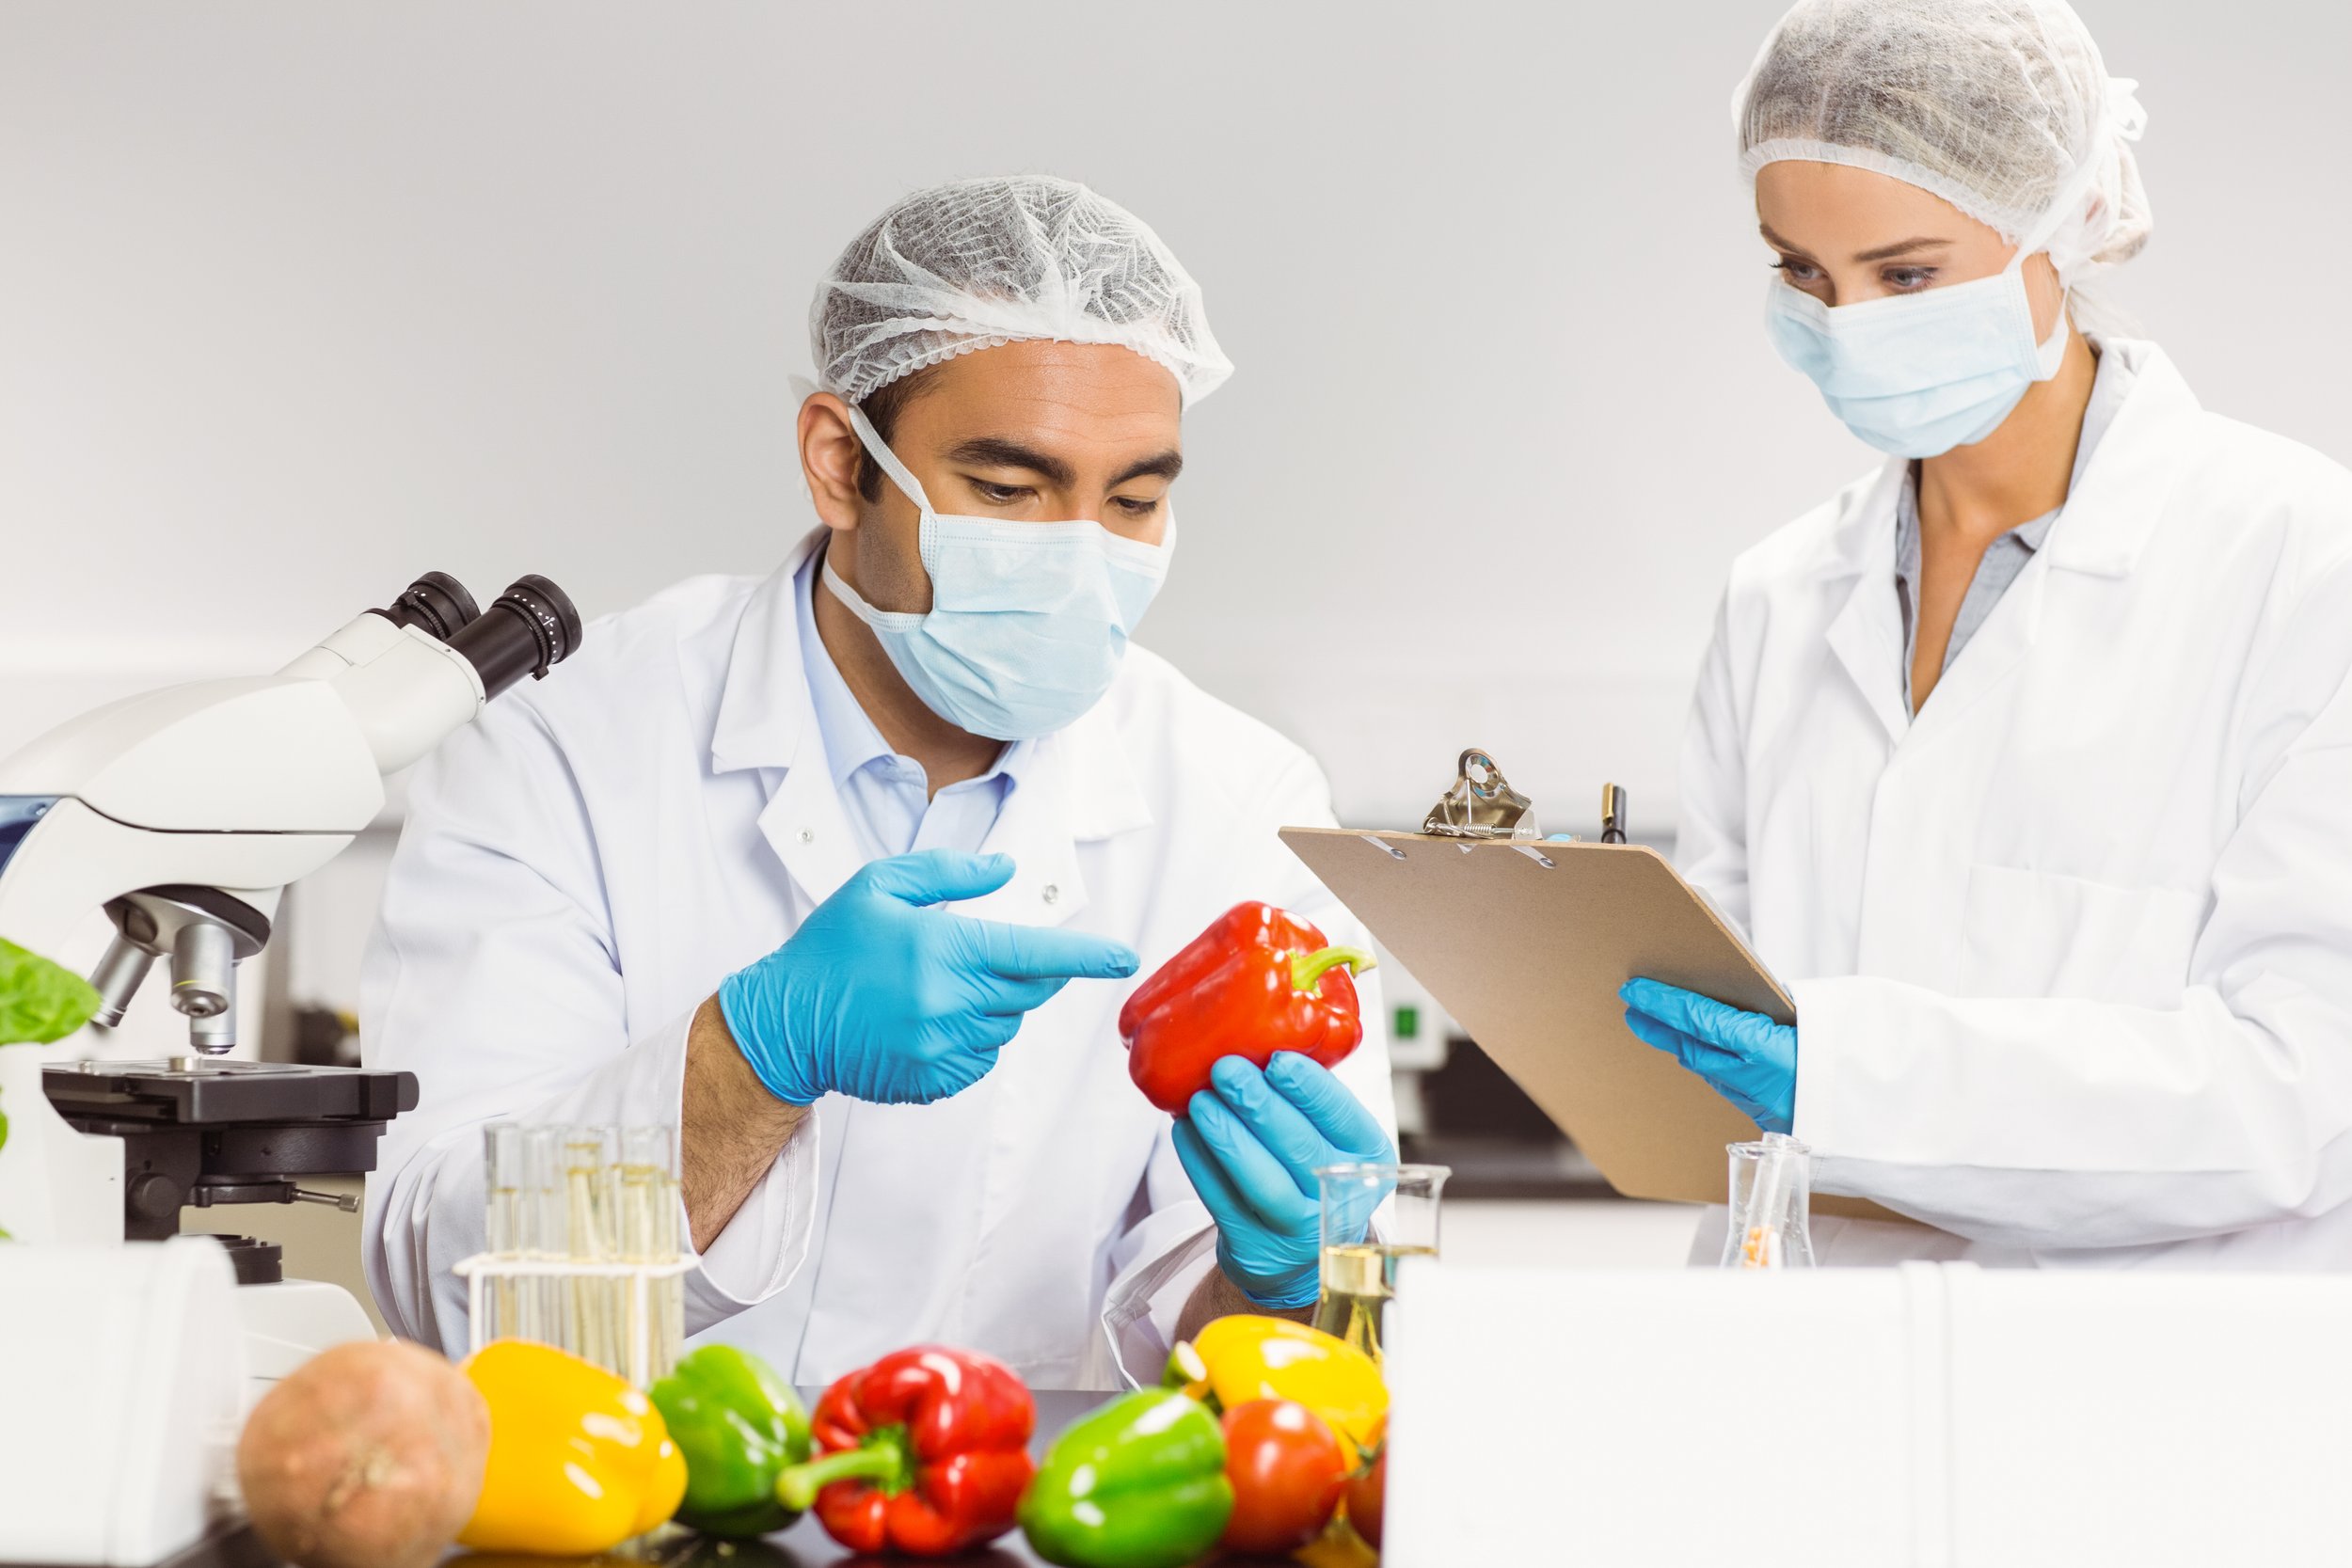 Lebensmittelsicherheit: Ein entscheidender Faktor für den Geschäftserfolg